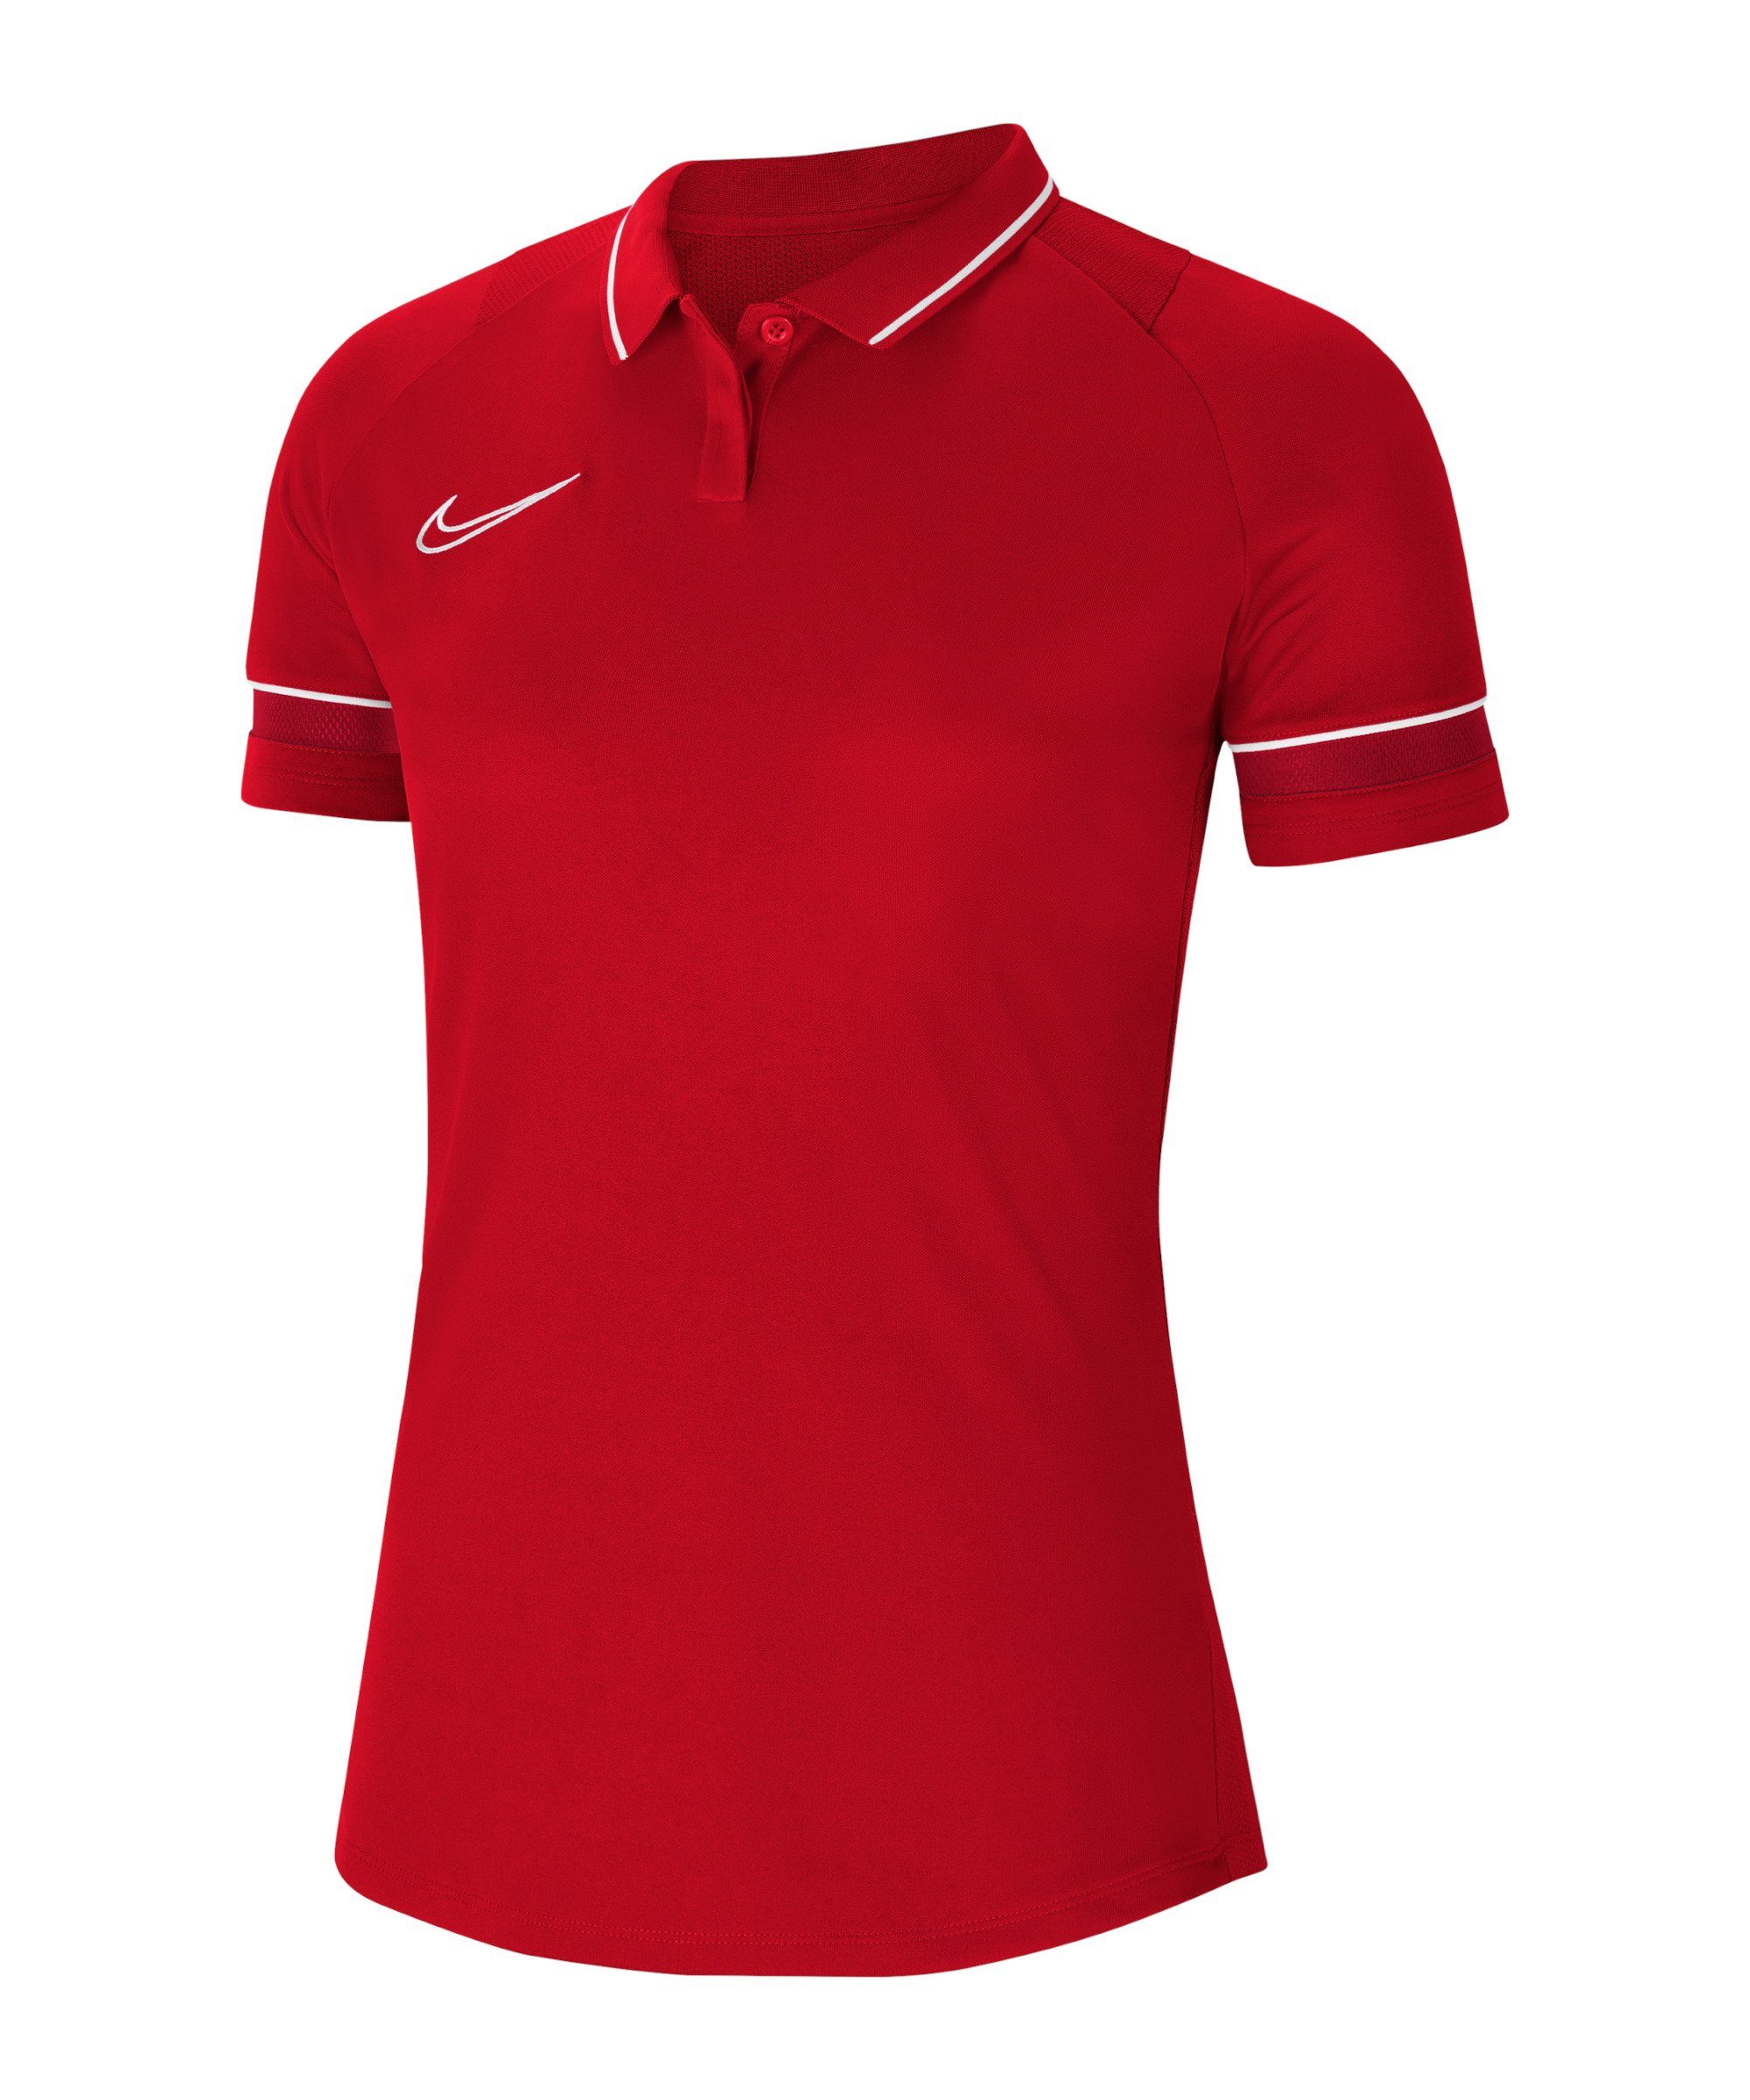 Nike Poloshirt Damen 21 default rotweiss Academy Poloshirt